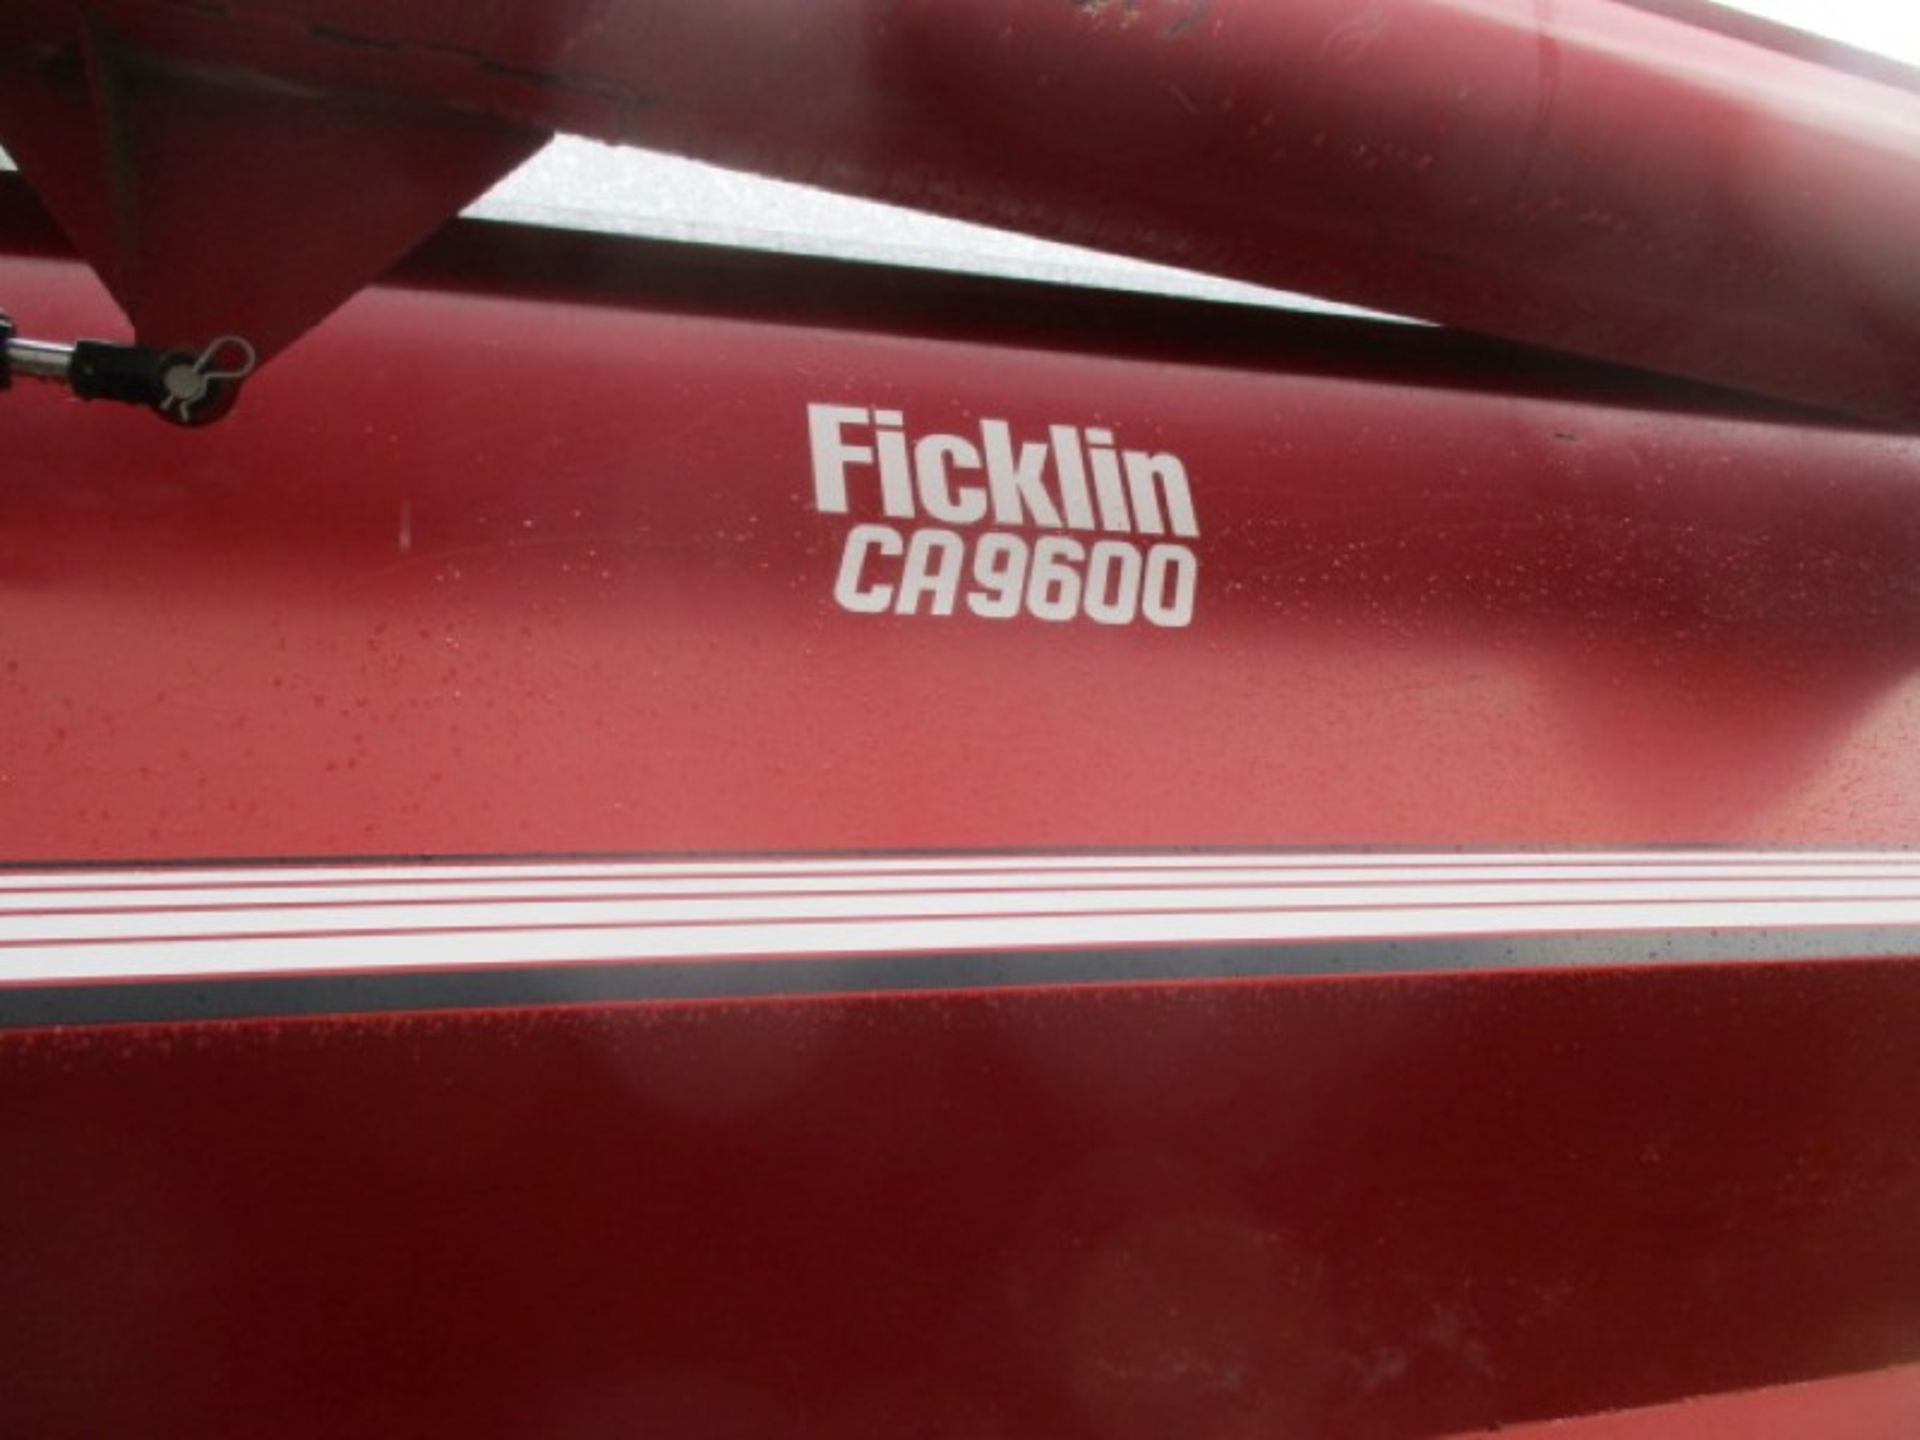 FICKLIN CA9600 GRAIN BUGGY - Image 2 of 3